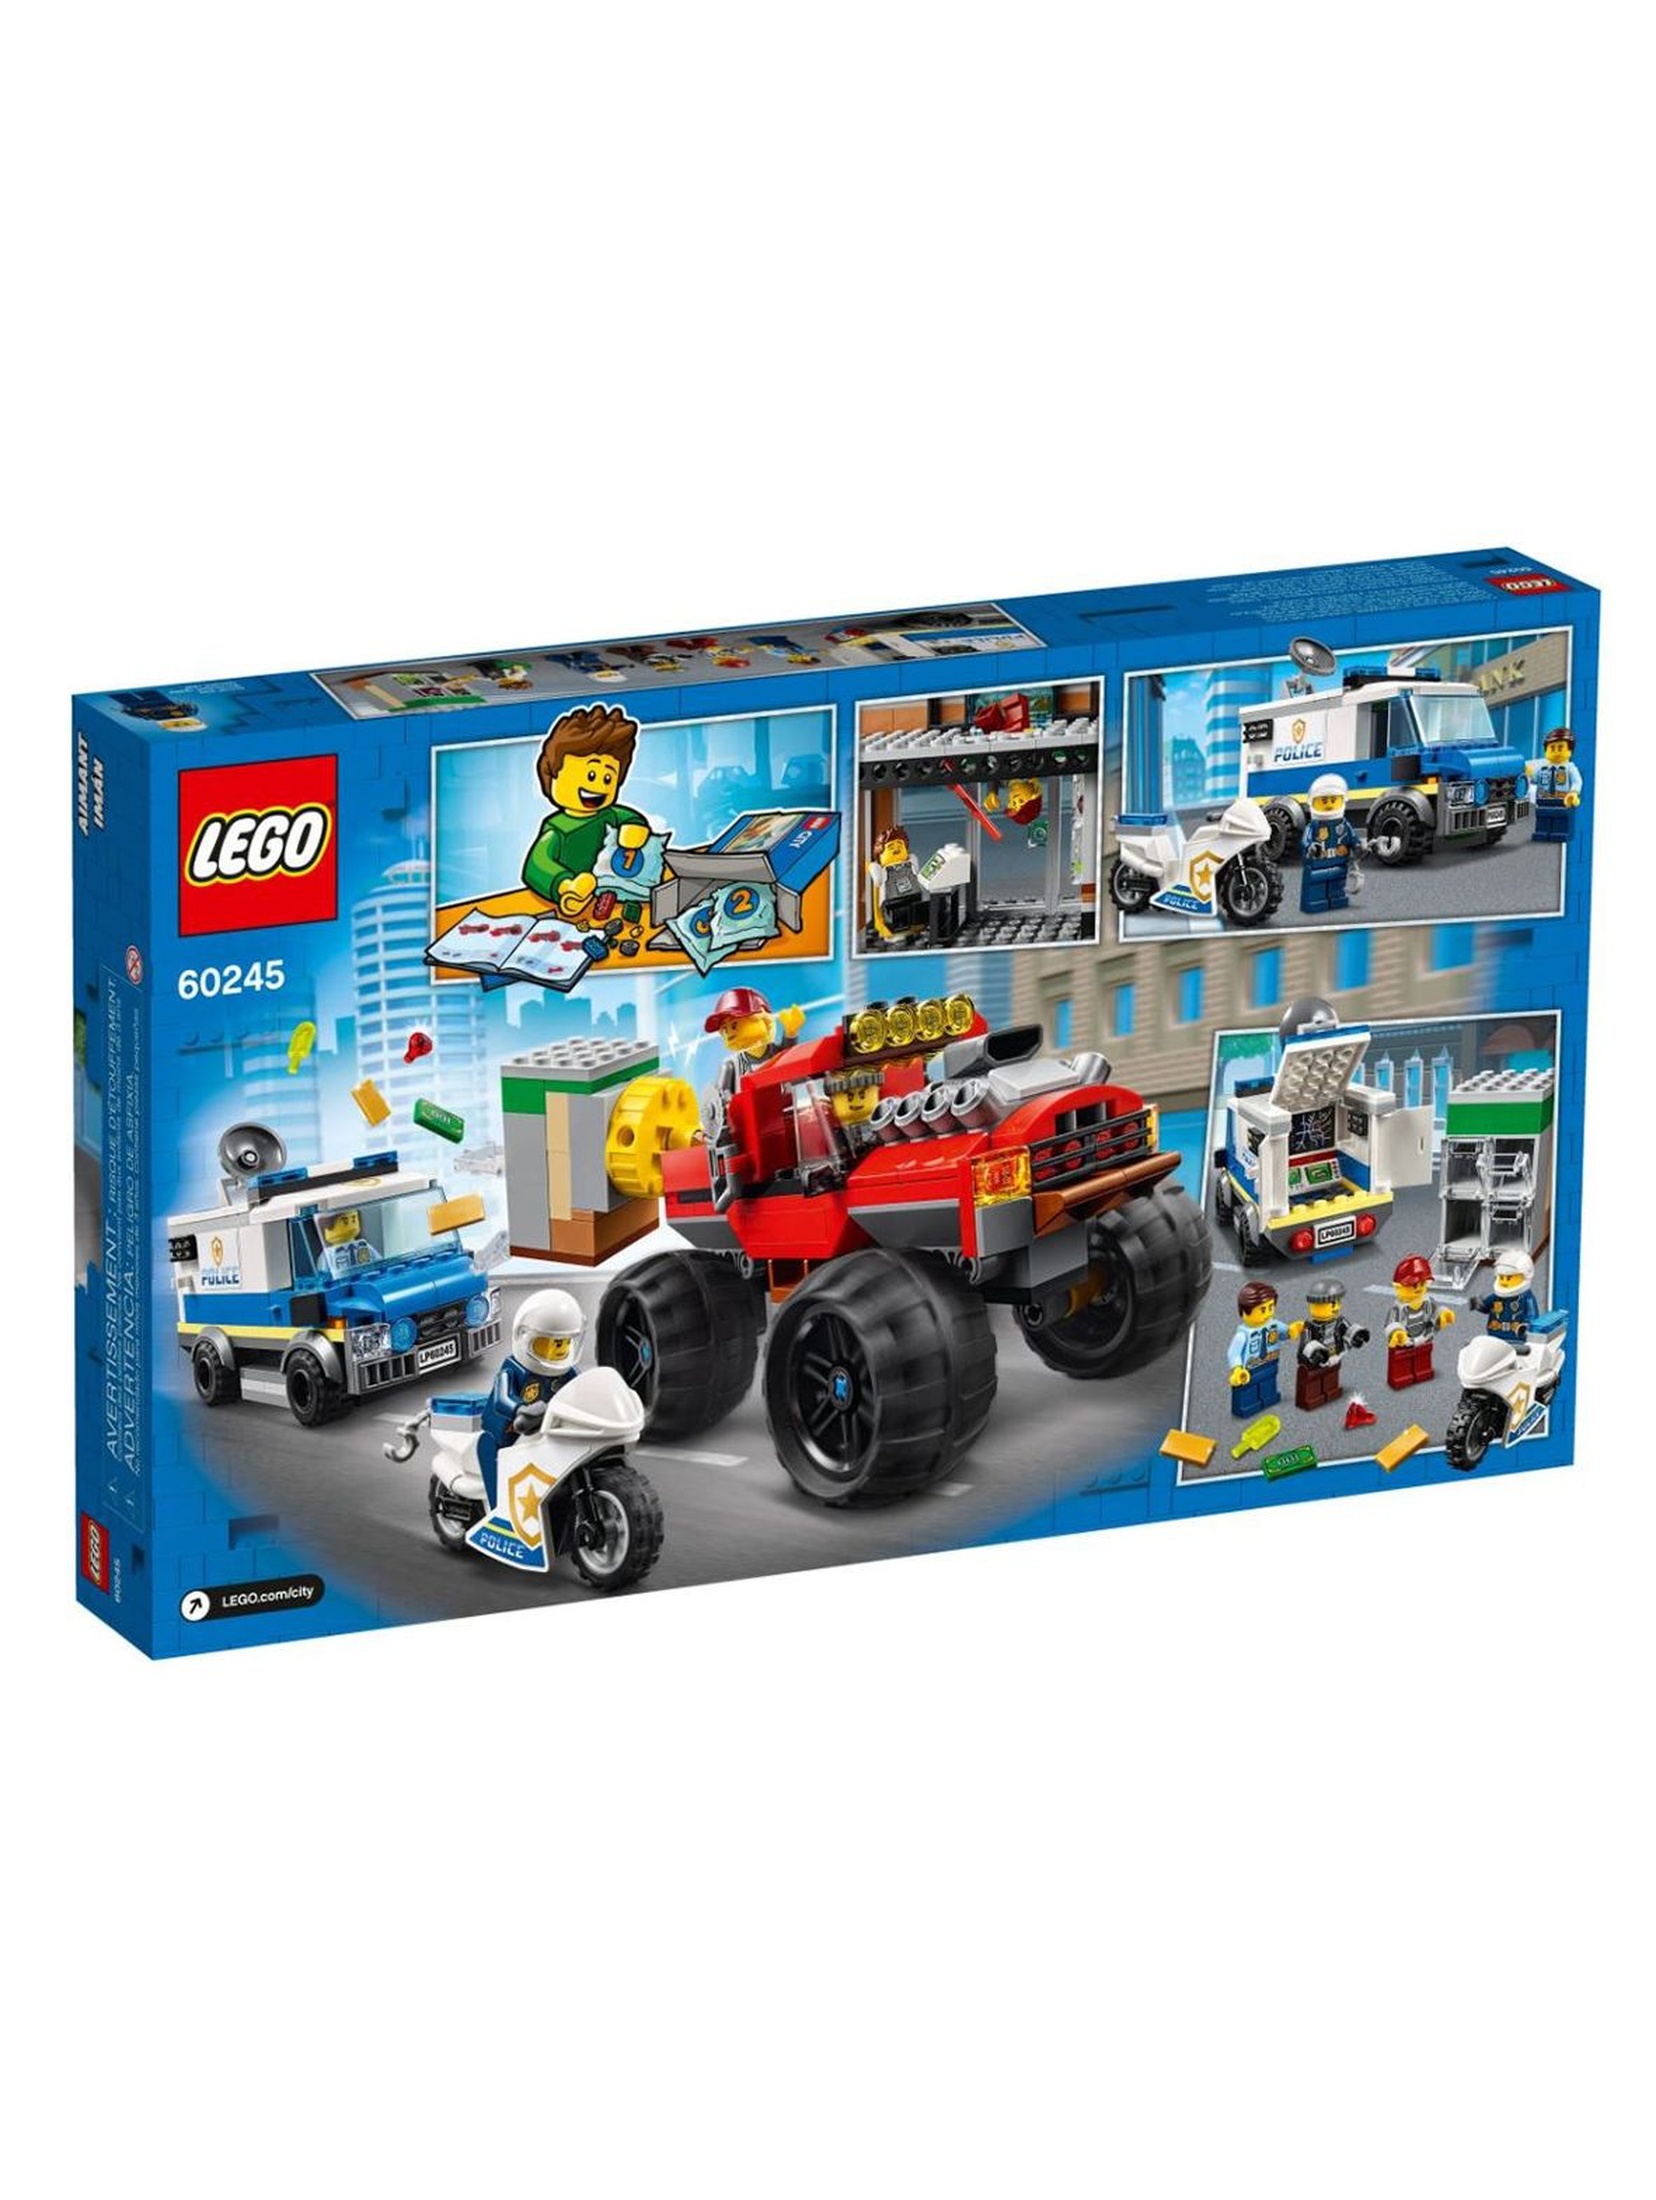 Lego City - Napad z monster truckiem - 362 el wiek 5+